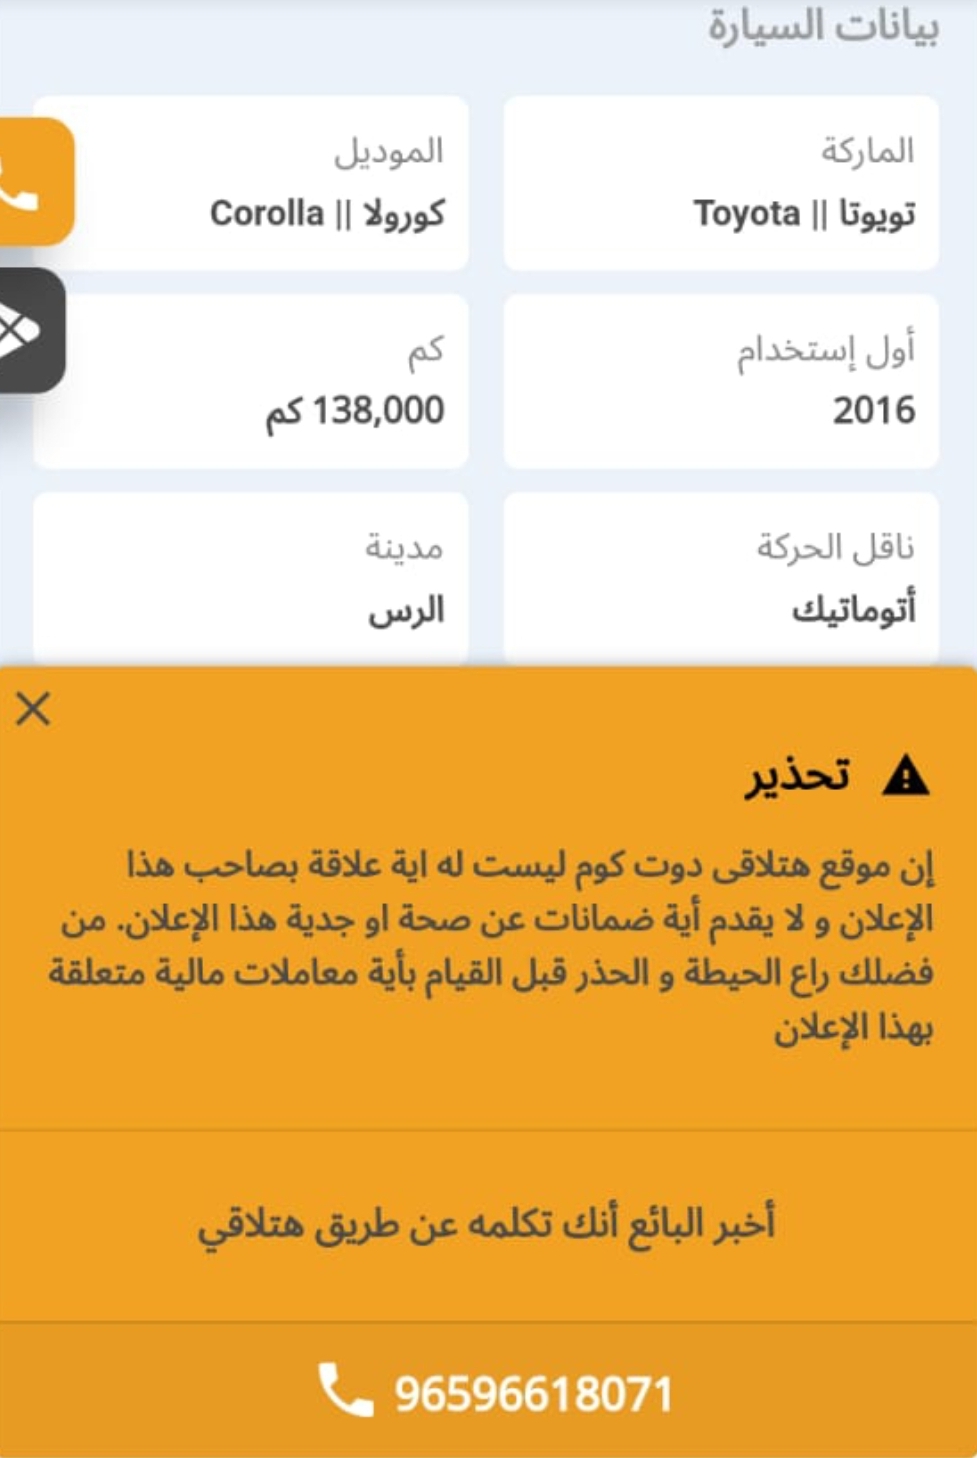 Screenshot ٢٠٢٣٠٥٢٠ ٠٠١٨٣٣ WhatsApp - مدونة التقنية العربية